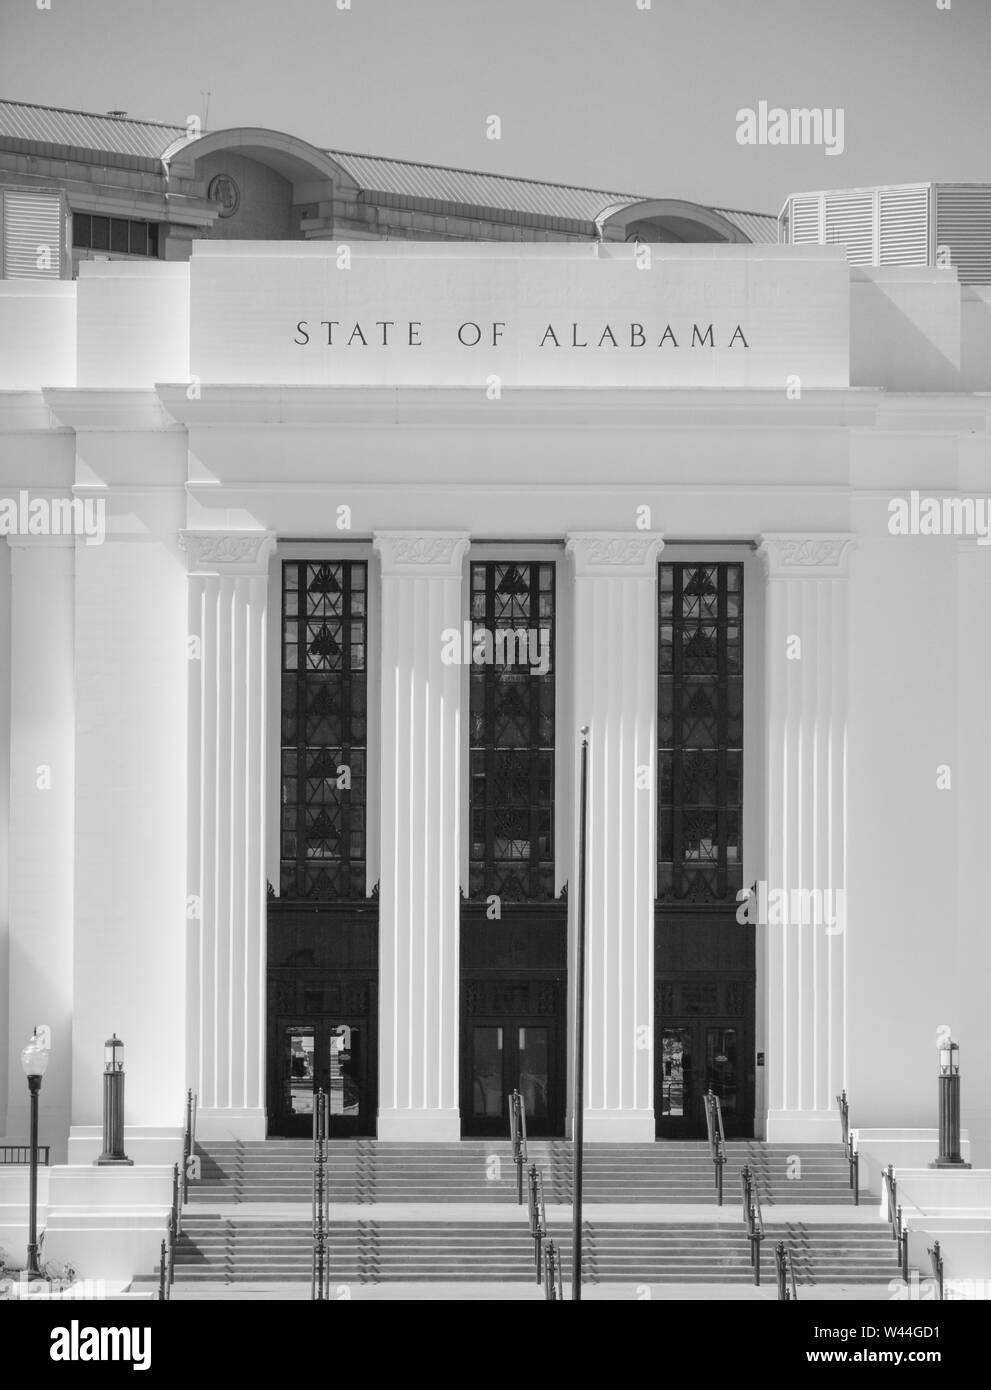 Le ministère de la Justice pour l'état de l'Alabama, où le procureur général a des bureaux dans la capitale de l'Etat de Montgomery, AL, États-Unis d'Amérique Banque D'Images